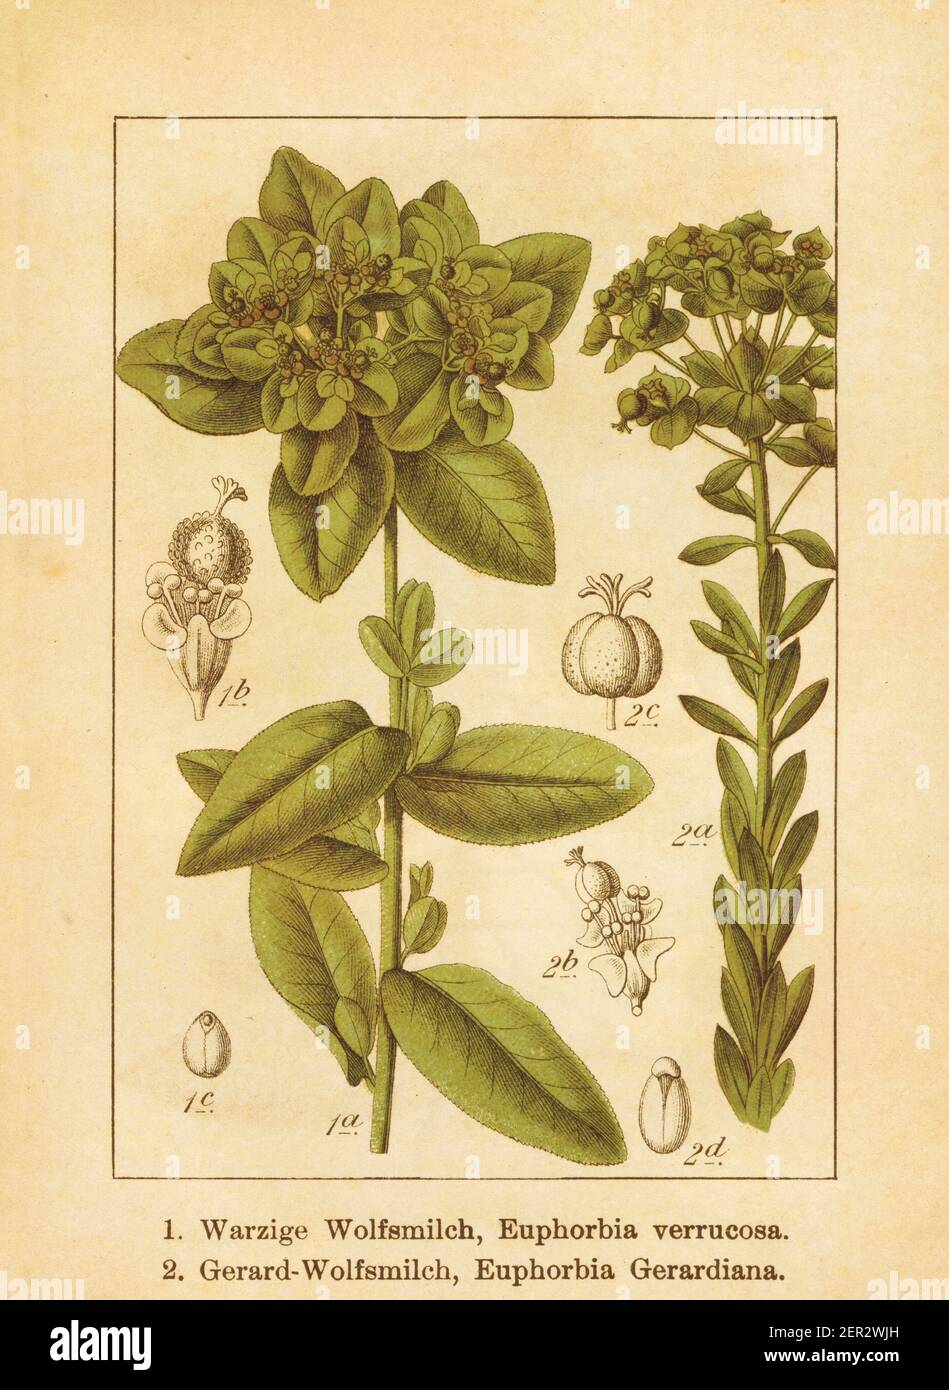 Antike Illustration einer Euphorbia verrucosa und Euphorbia gerardiana (auch bekannt als Euphorbia seguierana). Gestochen von Jacob Sturm (1771-1848) und Stockfoto